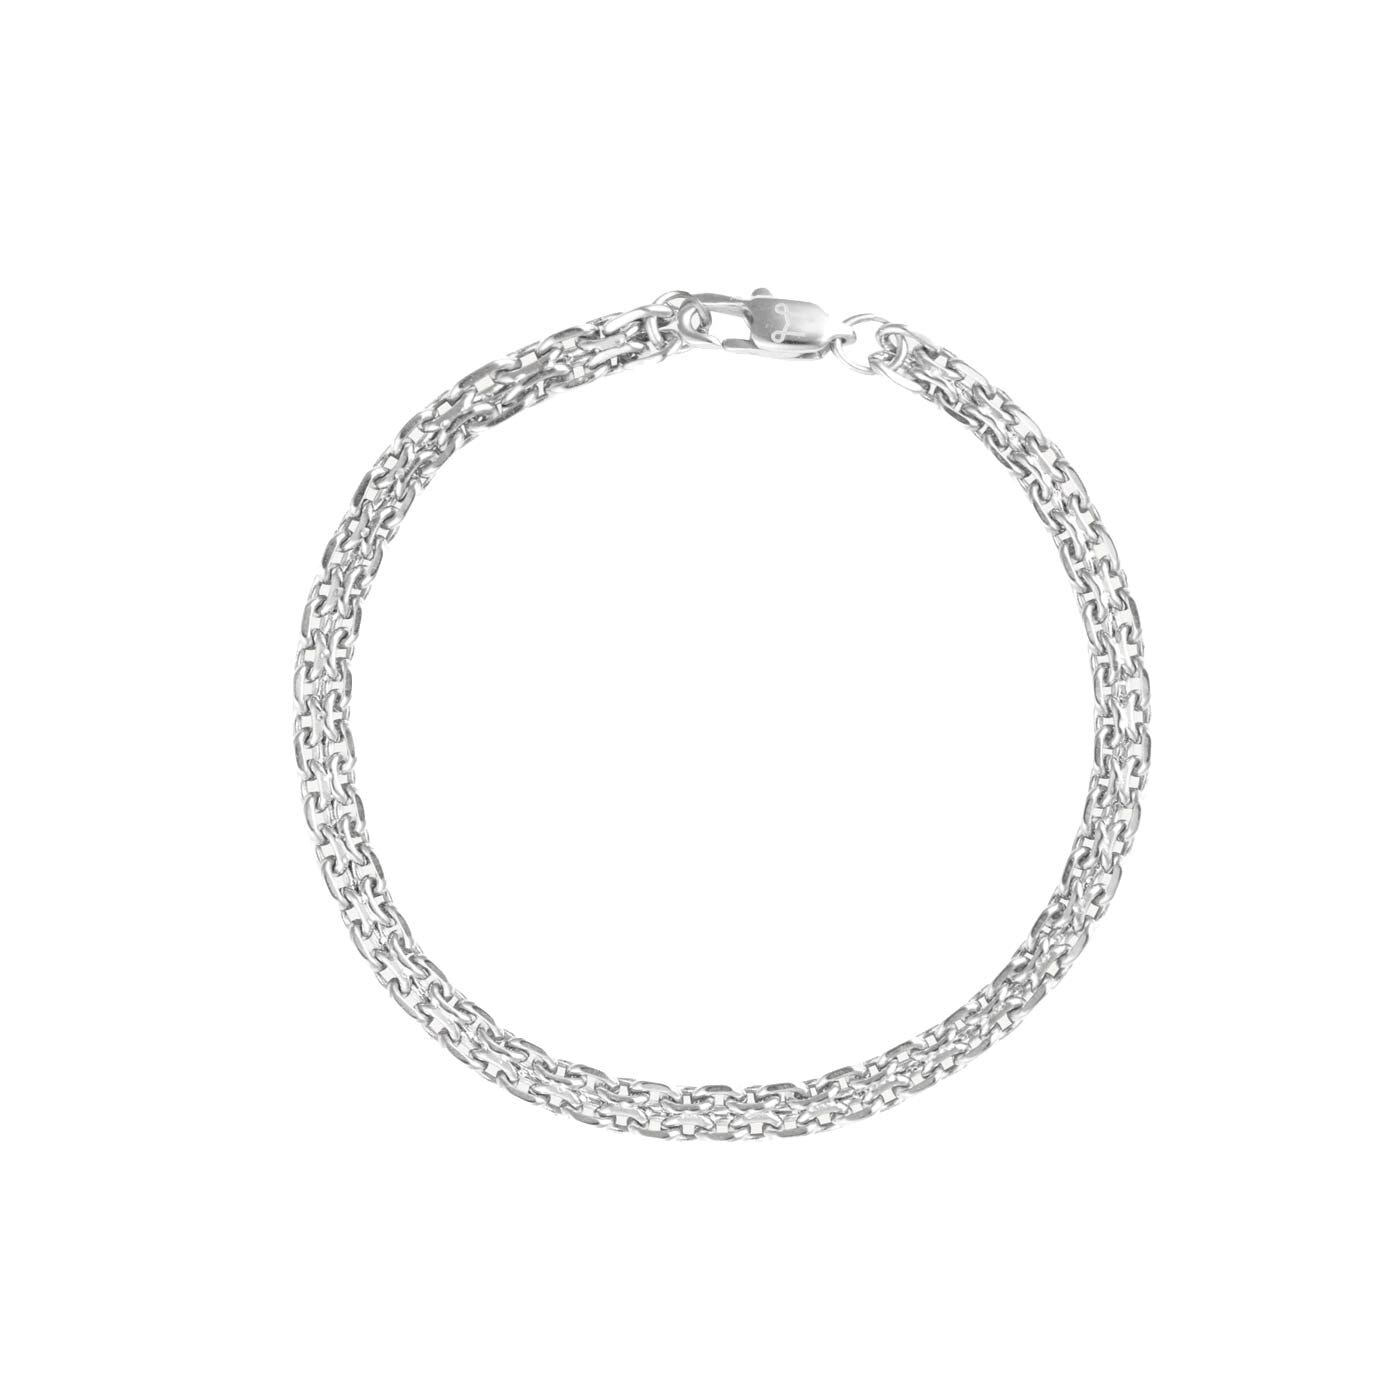 Darling Bracelet W Silver